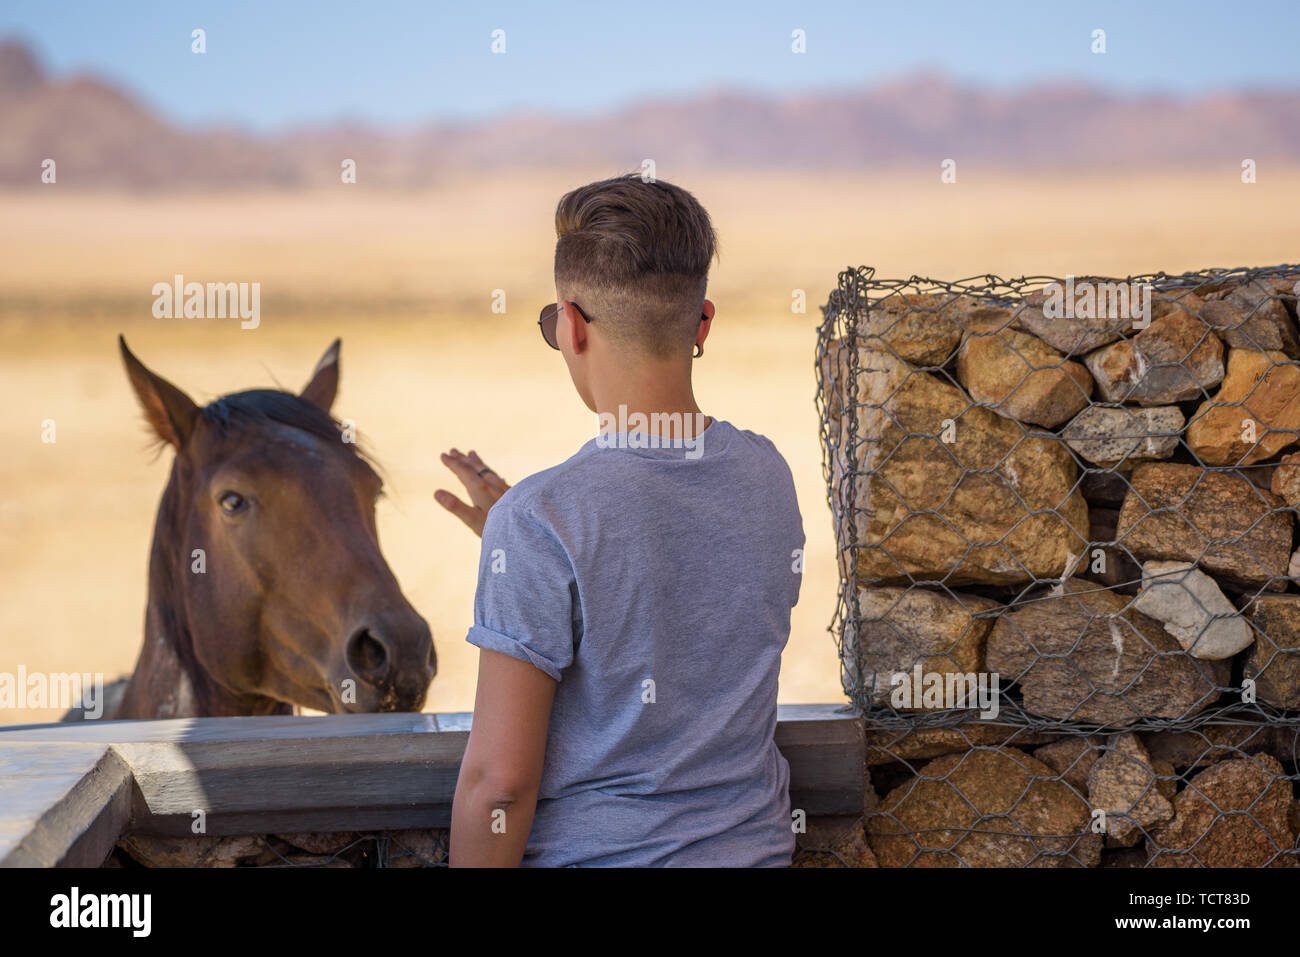 Mujer tratando de acariciar un caballo salvaje en el desierto de Namib, cerca de Luderitz, Namibia Foto de stock